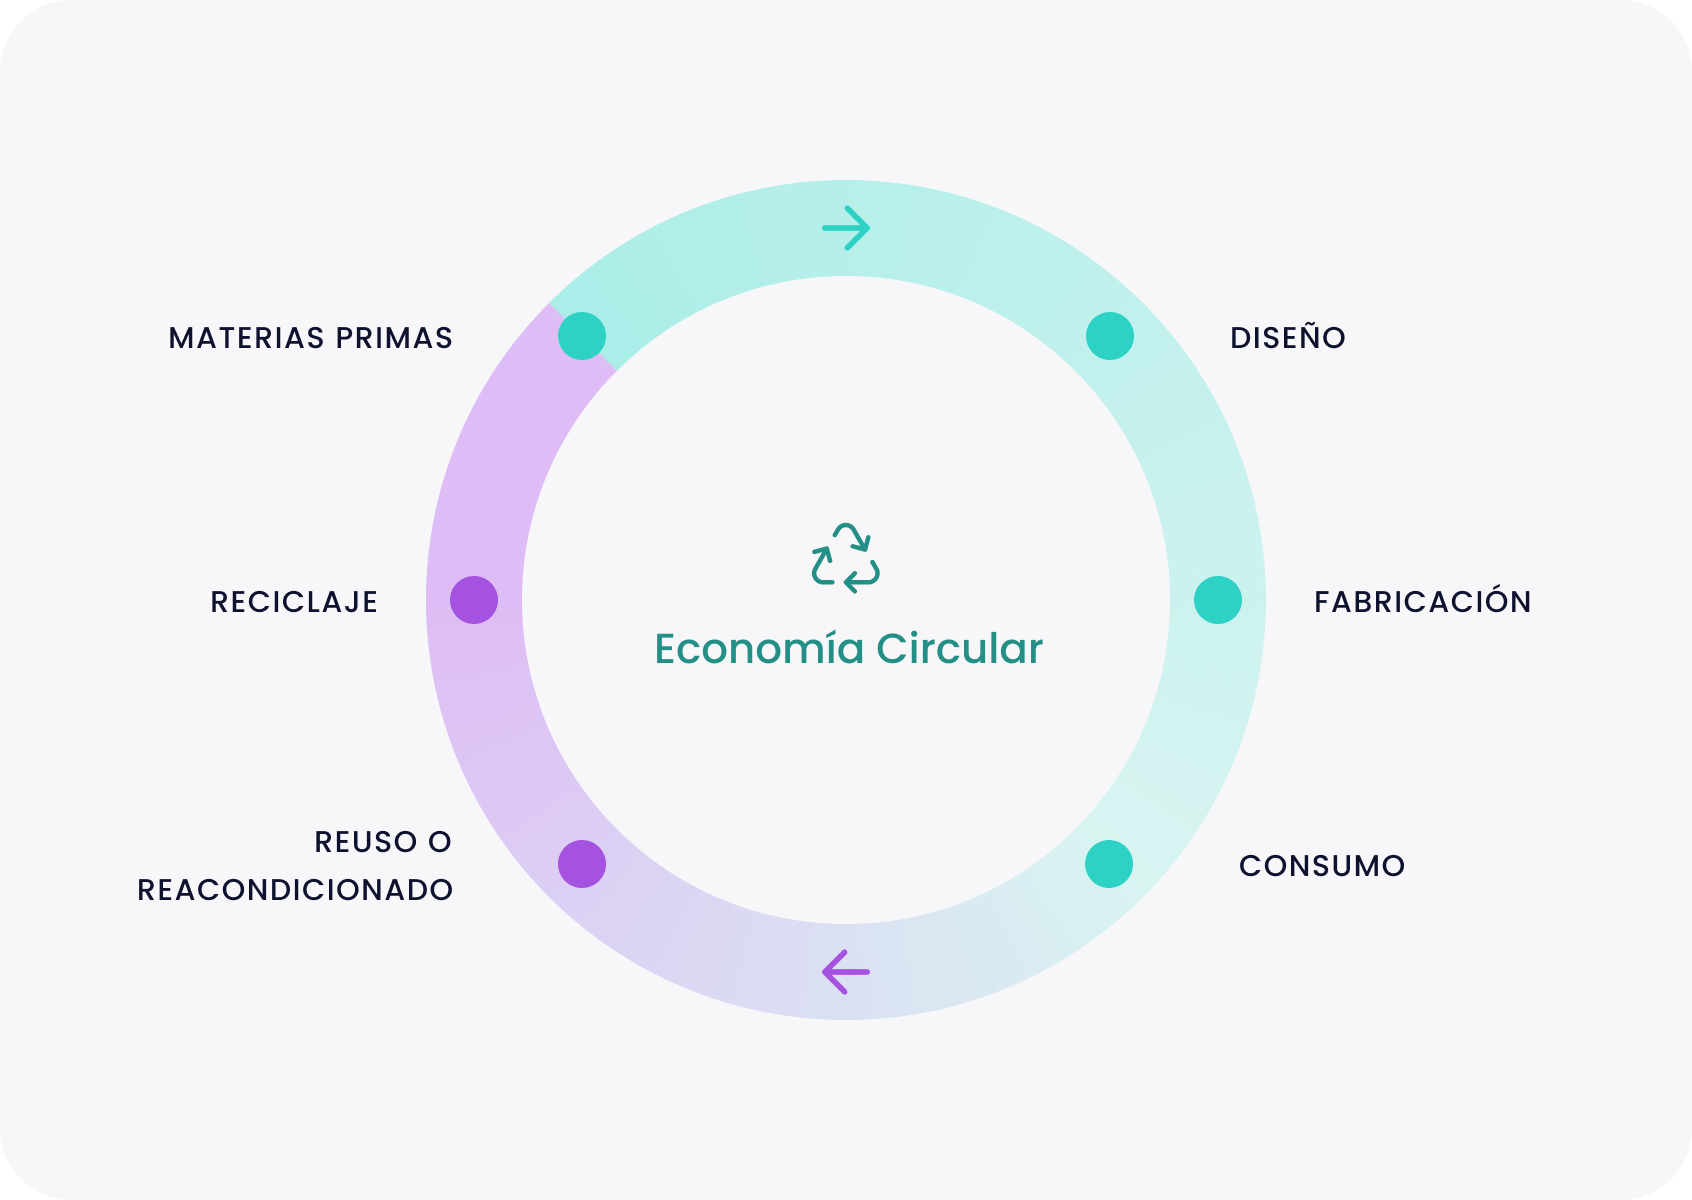 Forma parte de una economía circular